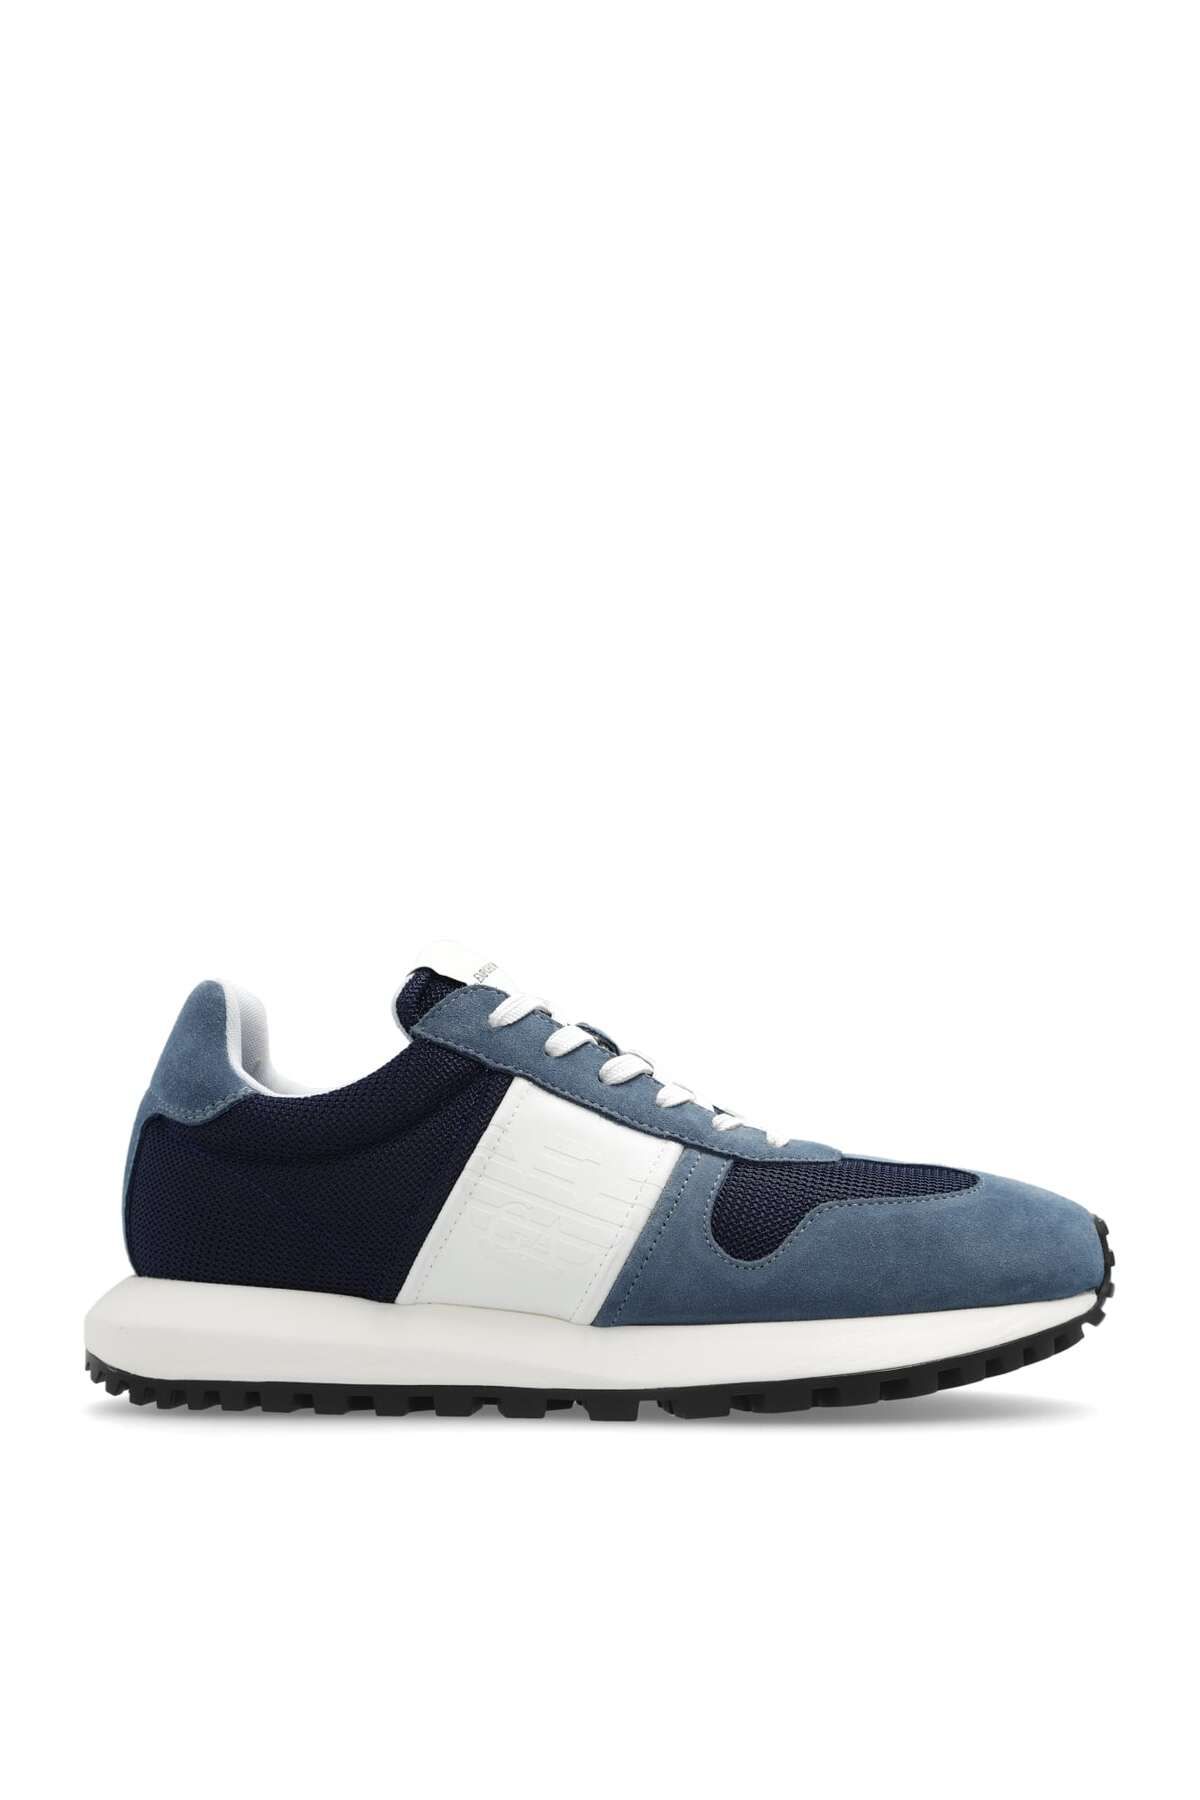 Emporio Armani Erkek Marka Logolu Bağcıklı Kaydırmaz Tabanlı Günlük Mavi Sneaker X4X640 XR102-T858